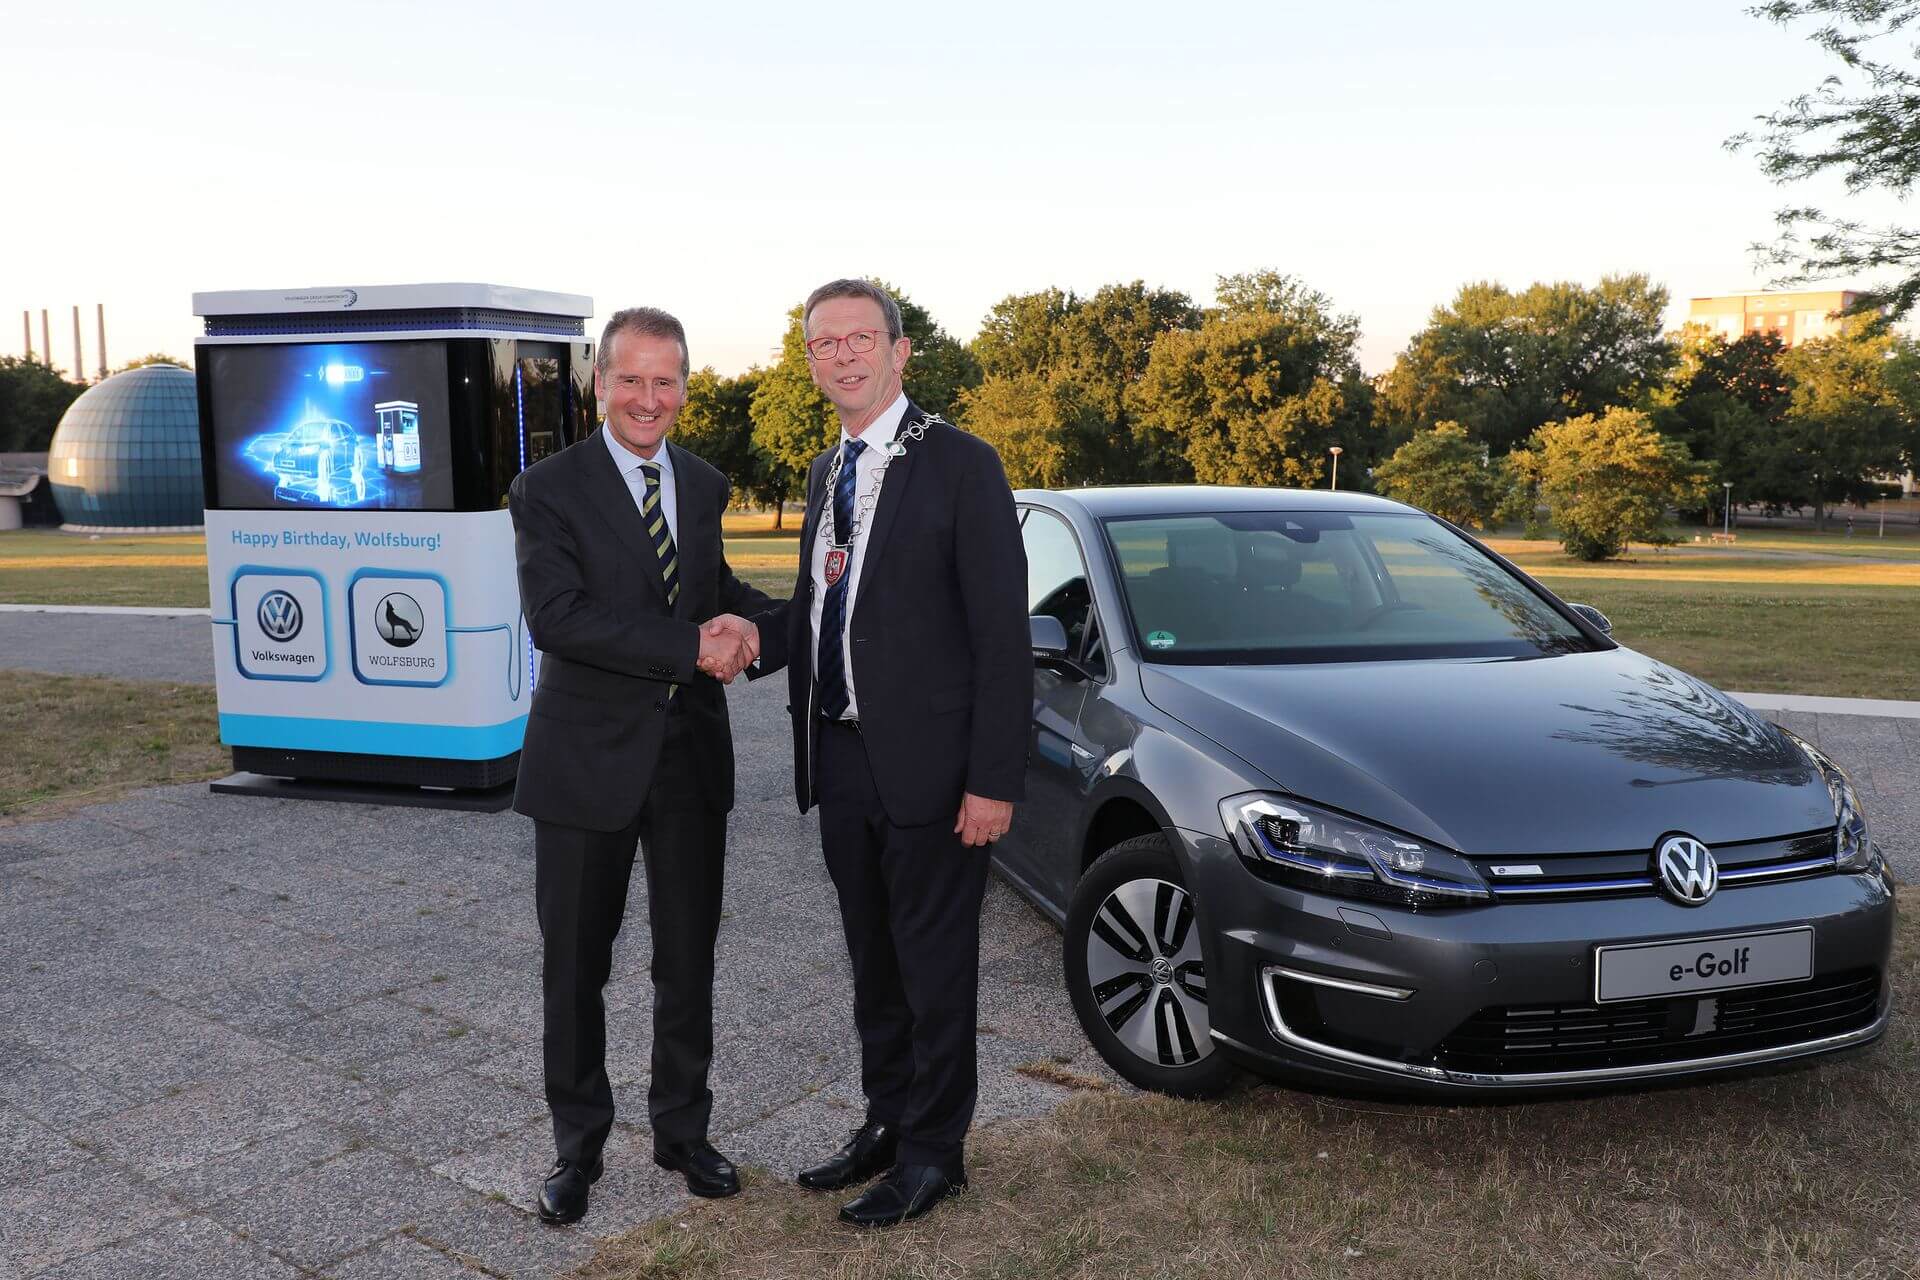 Вручение городу Вольфсбург 12 специальных мобильных зарядных станций Volkswagen